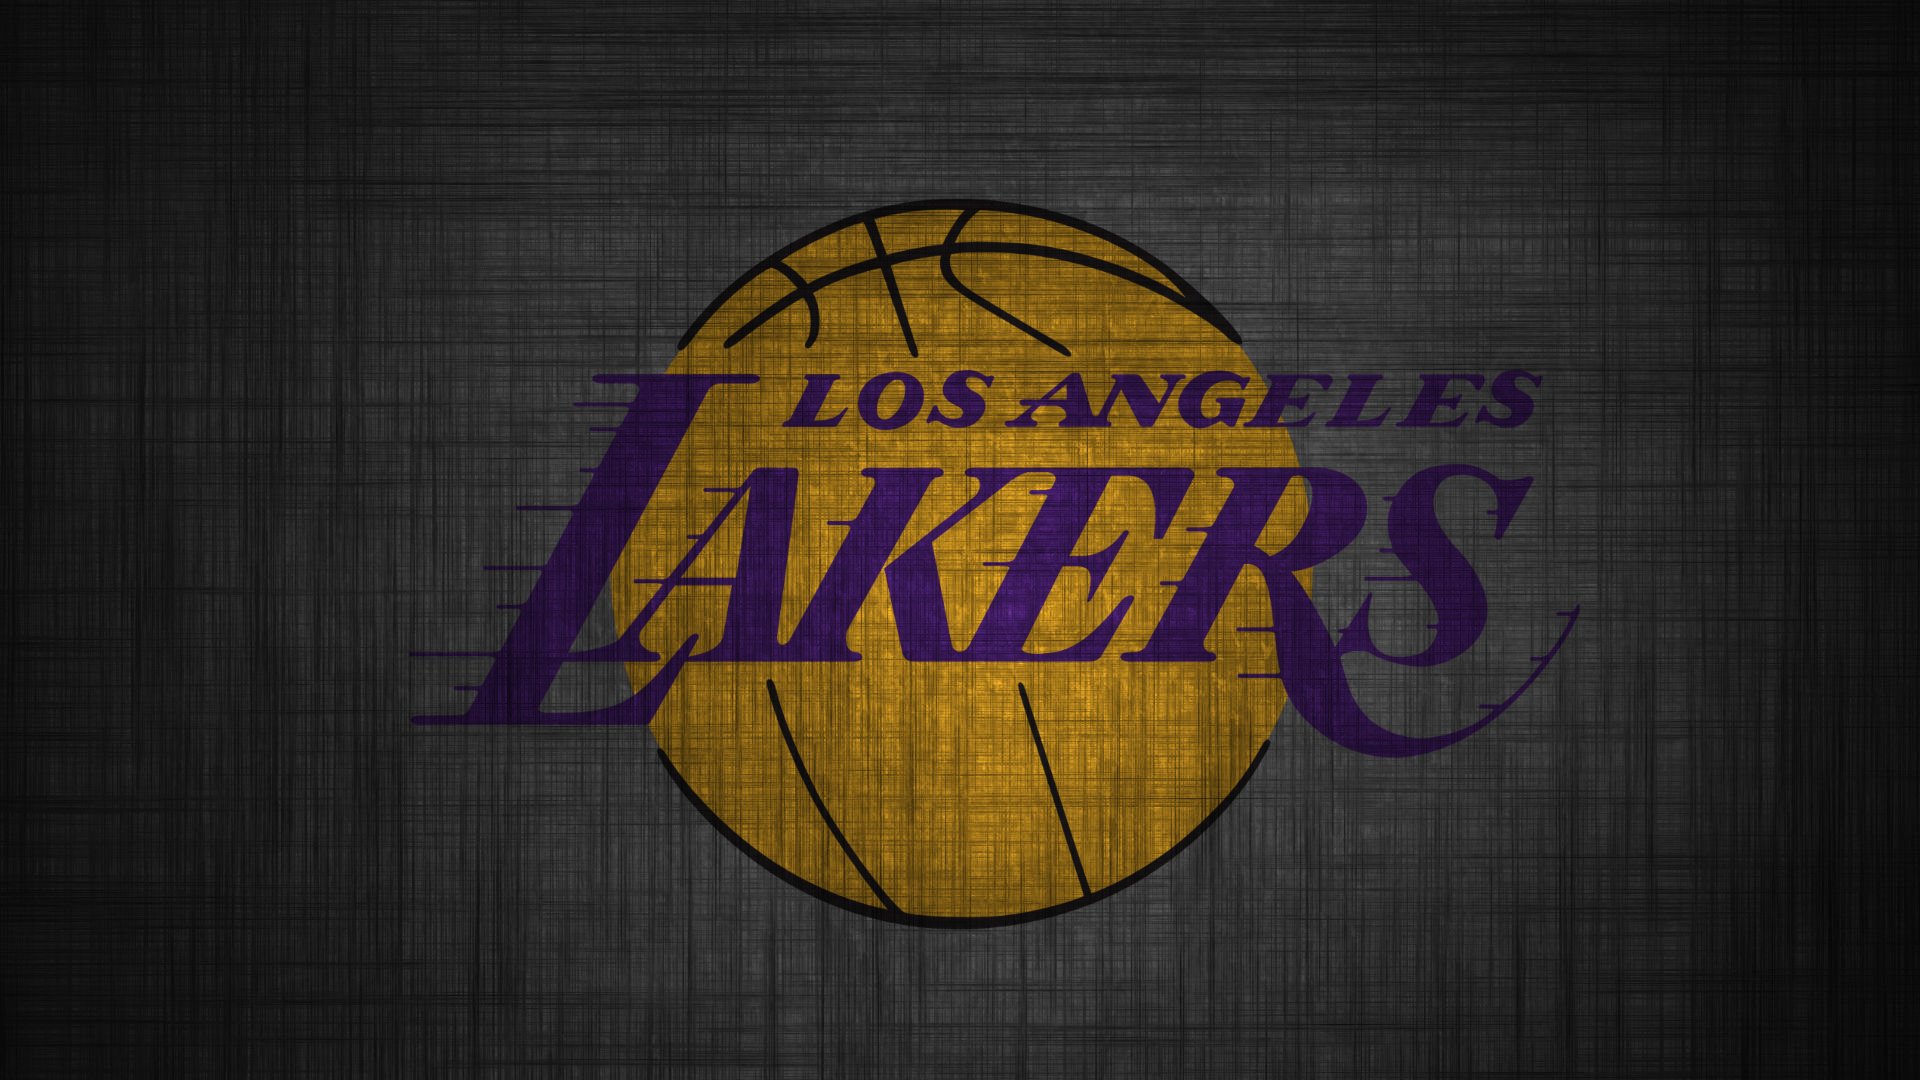 HD Lakers Wallpaper Desktop 4k